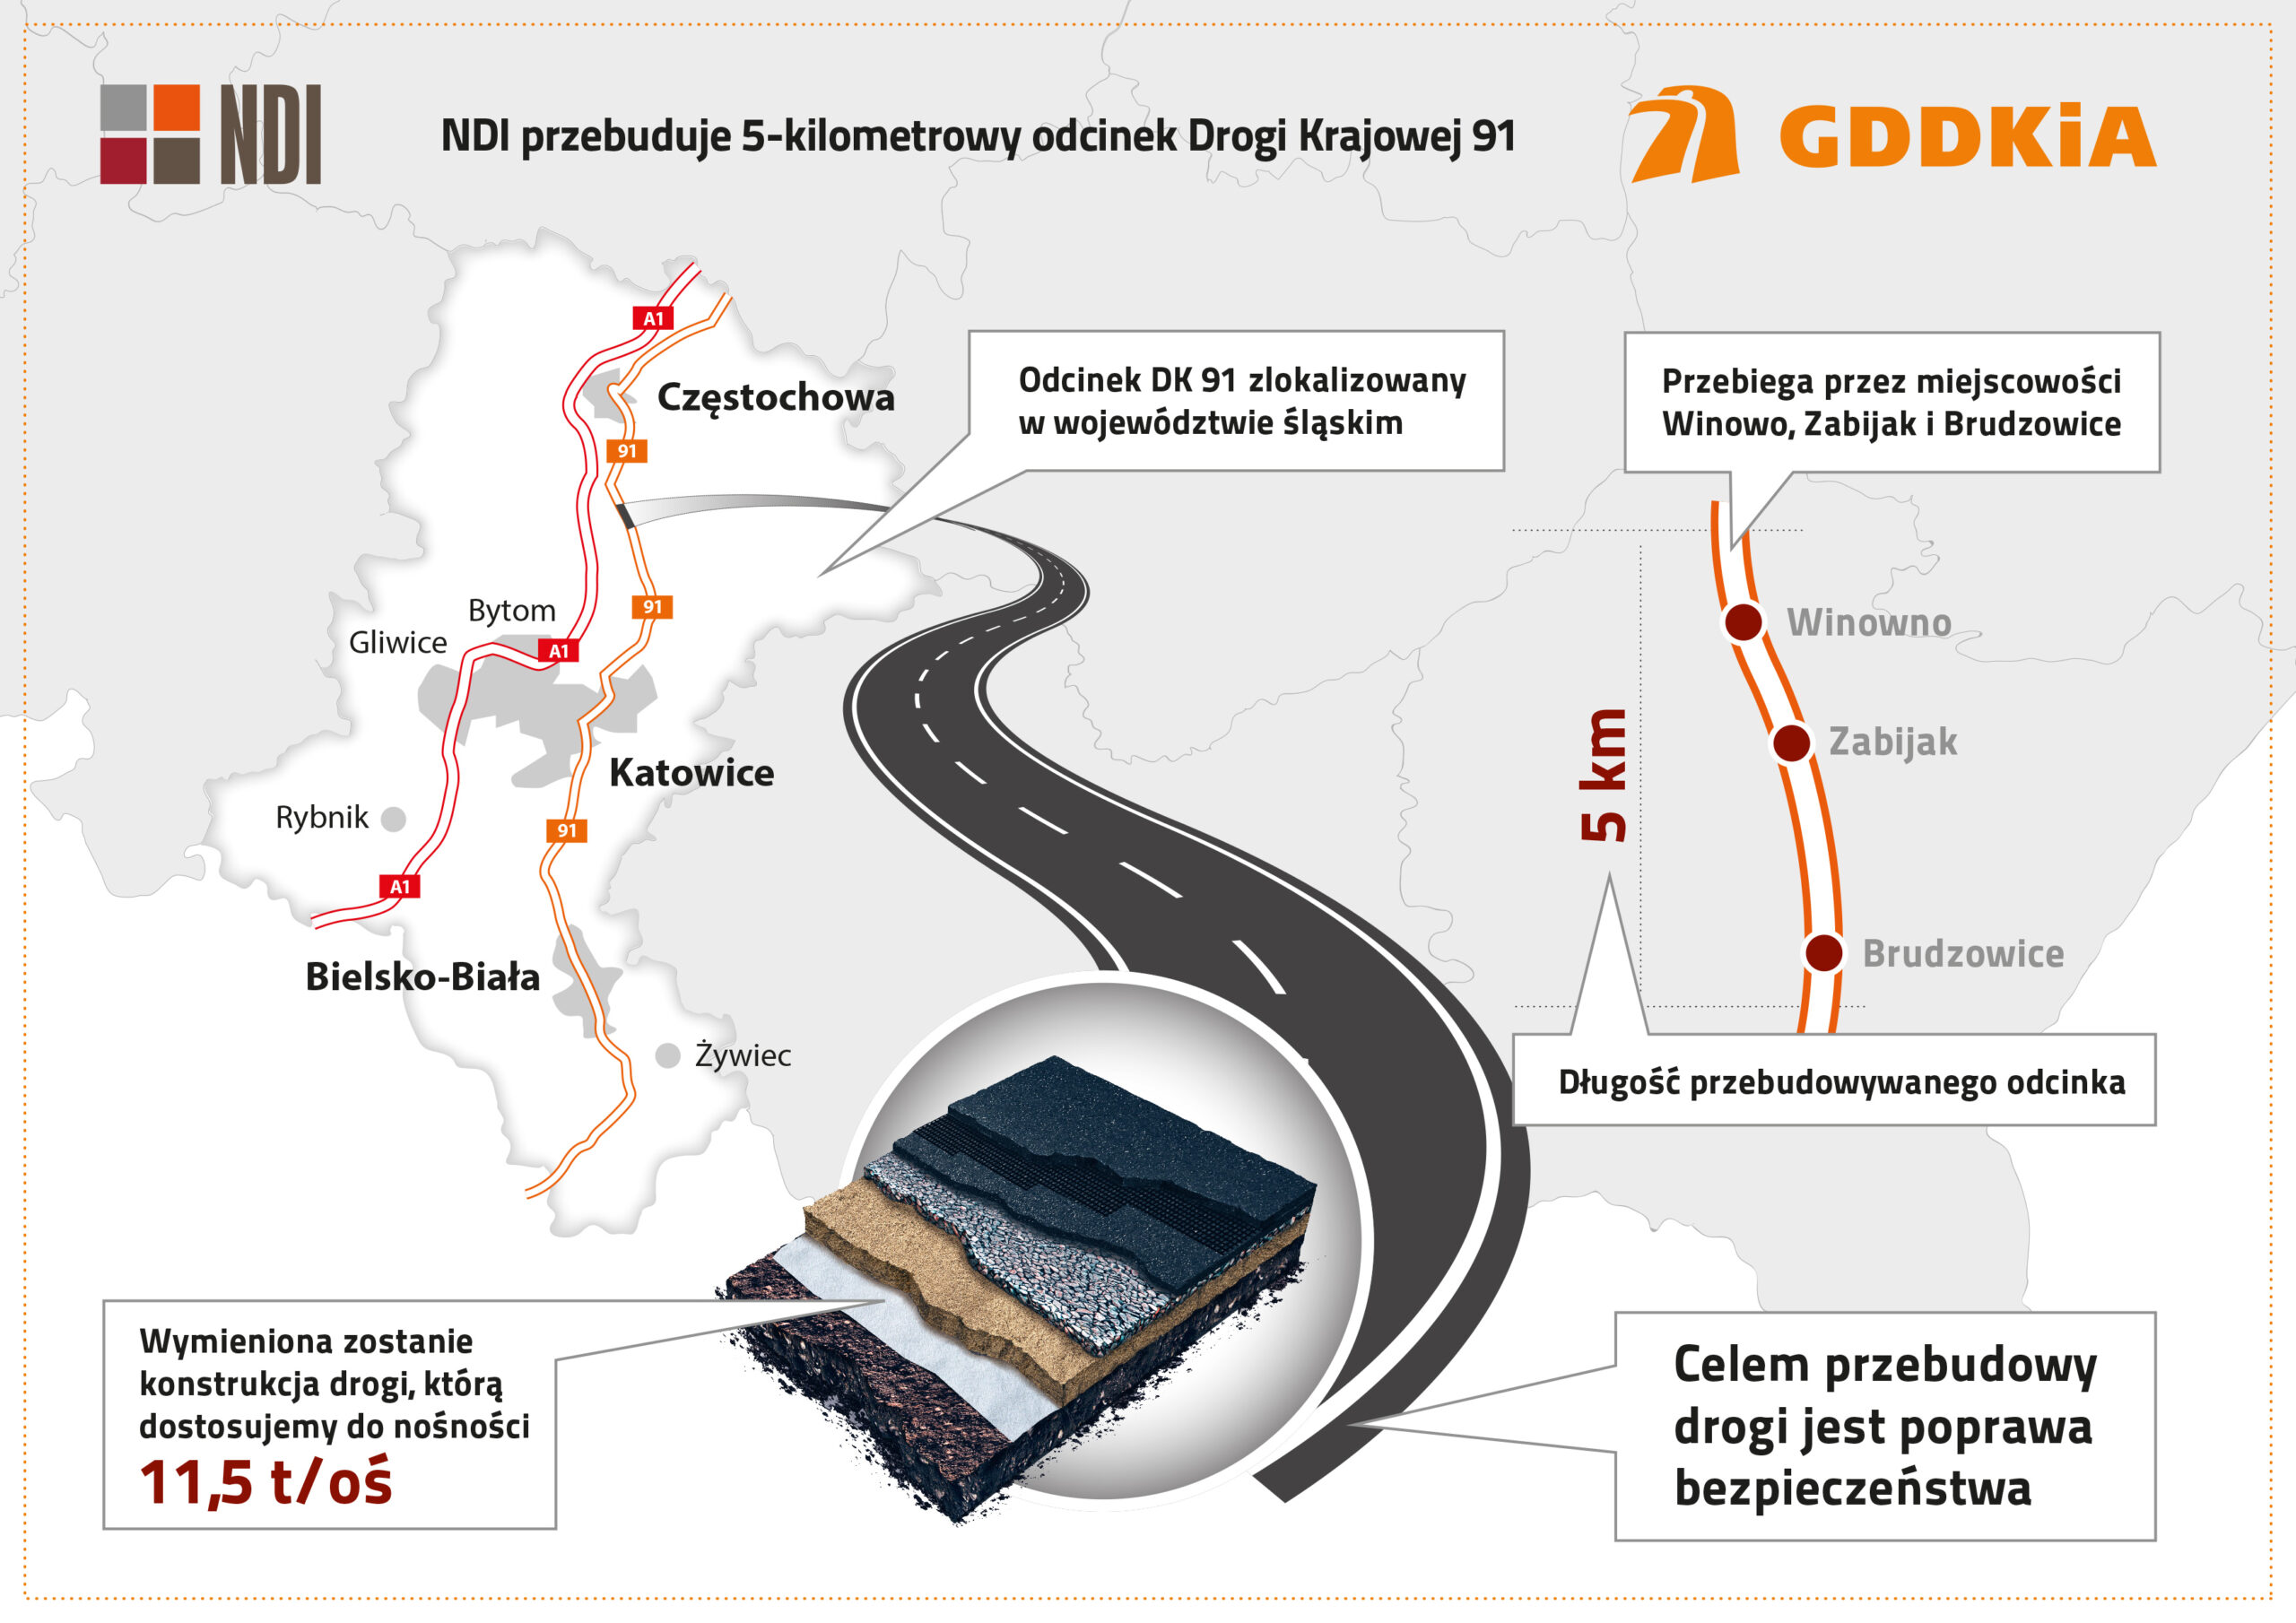 NDI przebuduje 5-kilometrowy odcinek DK91